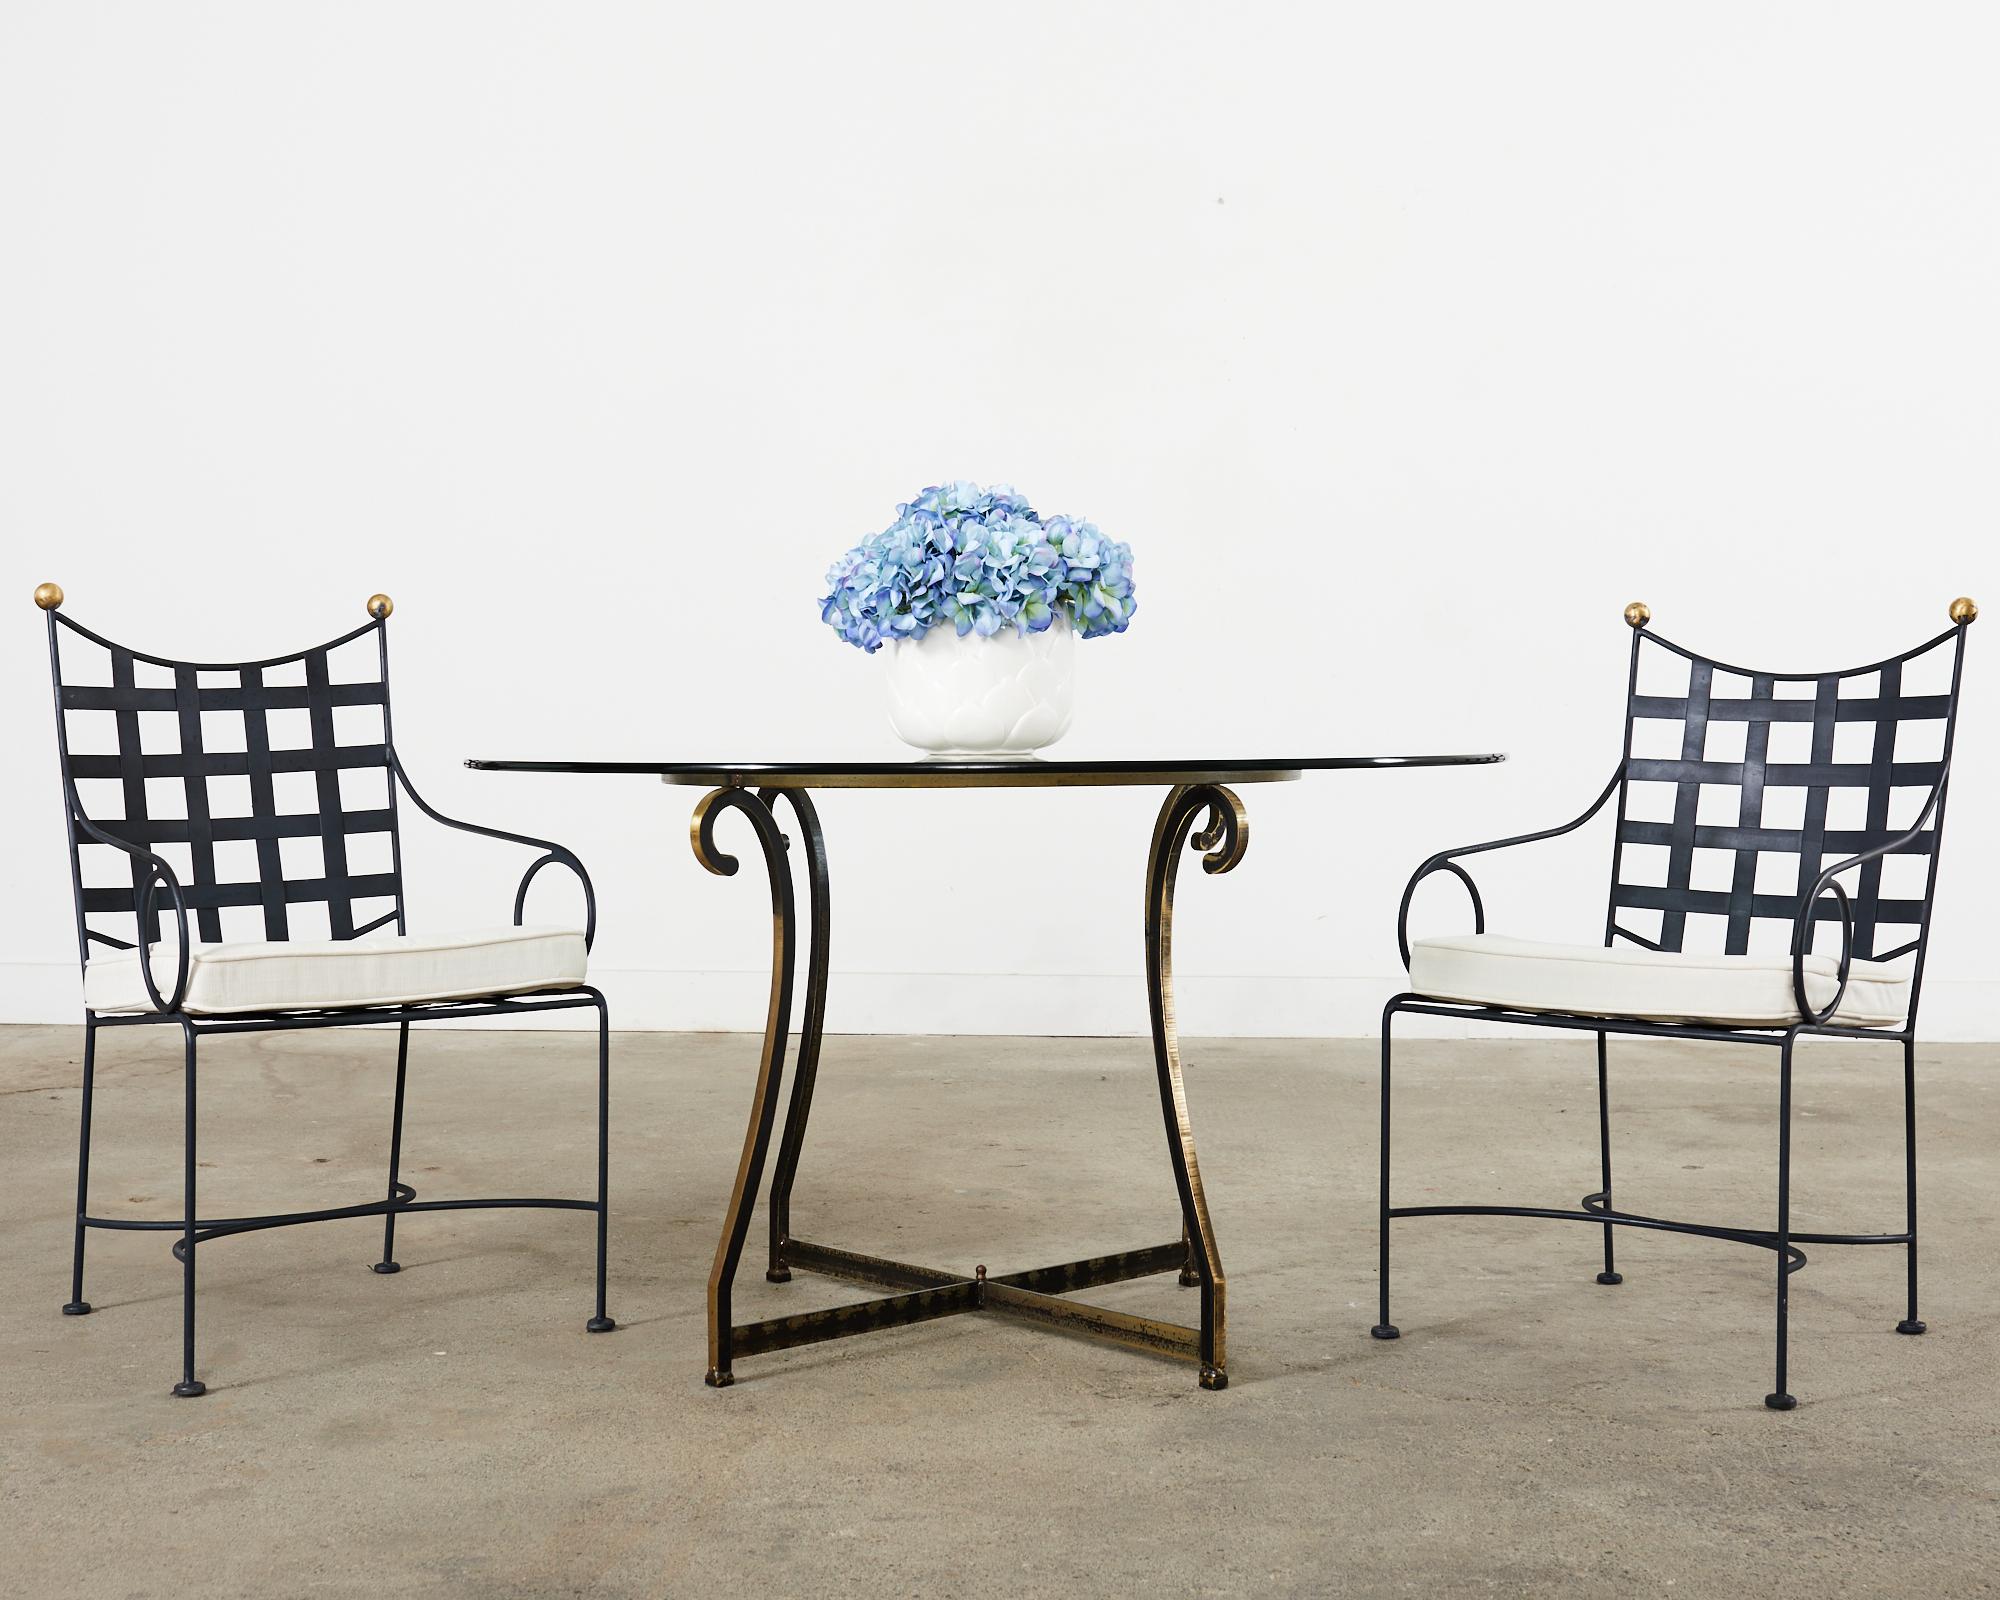 Ensemble iconique de quatre fauteuils de salle à manger de patio et de jardin de style moderne du milieu du siècle dernier, réalisés dans le style et à la manière de Mario Papperzini pour John Salterini. Les chaises sont dotées d'une armature en fer